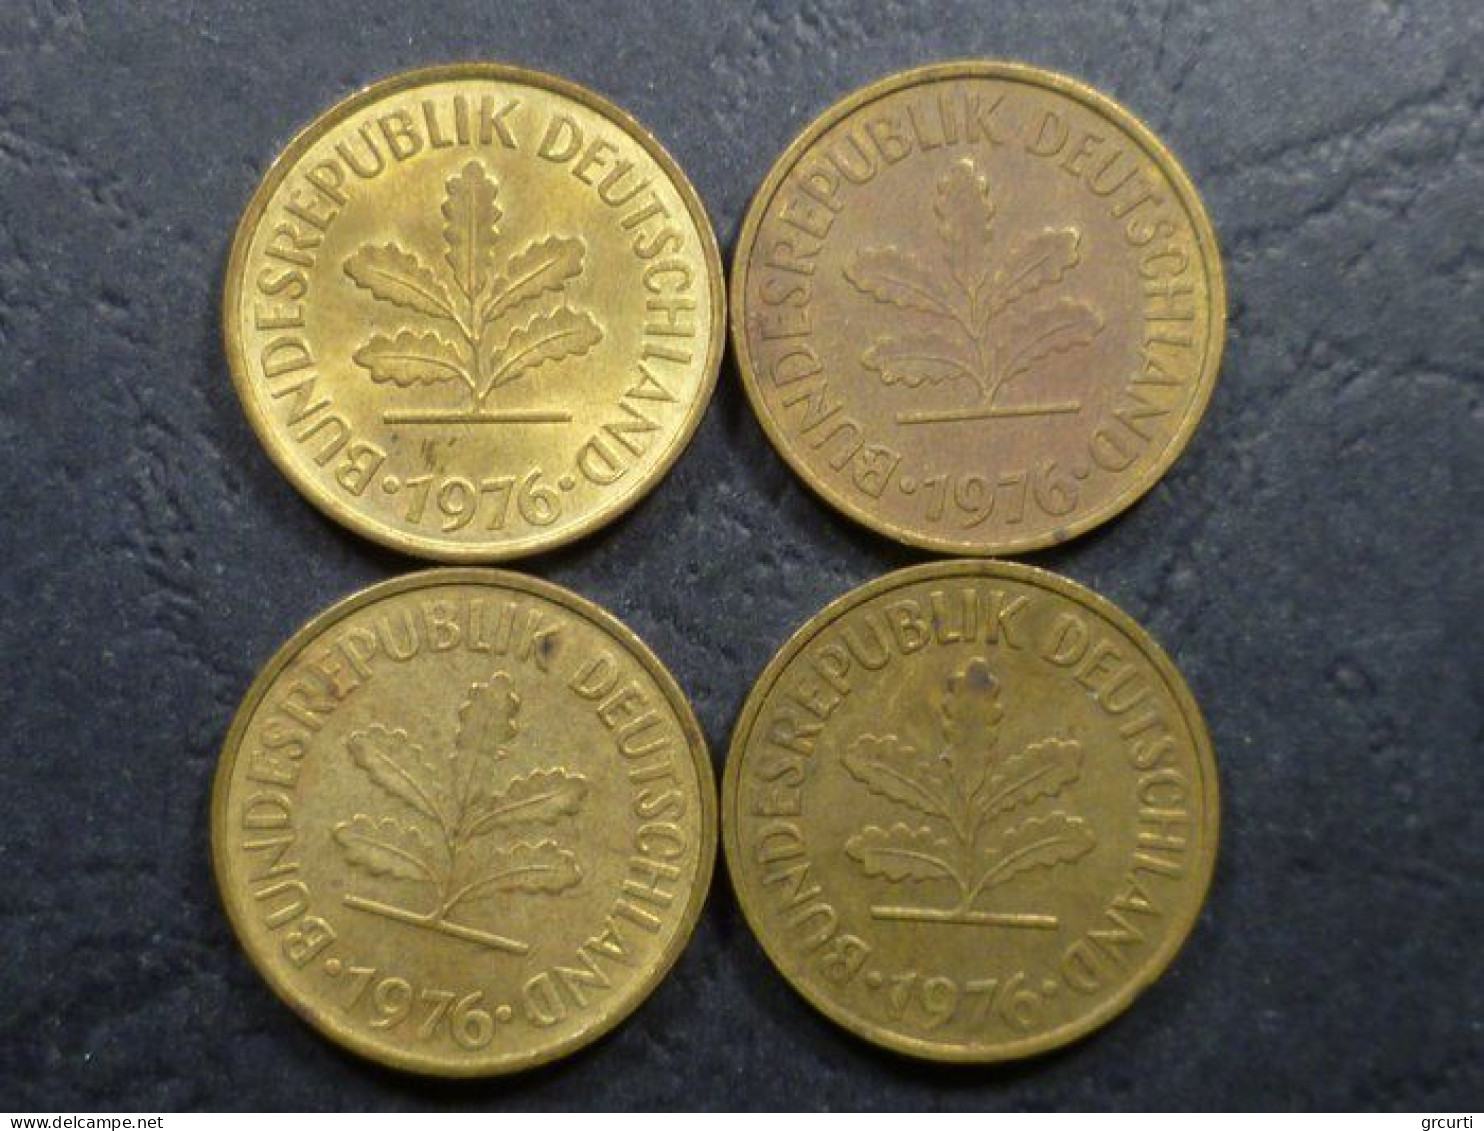 Germania - 5 Pfenning - Lotto di 132 monete emesse dal 1949 al 1996